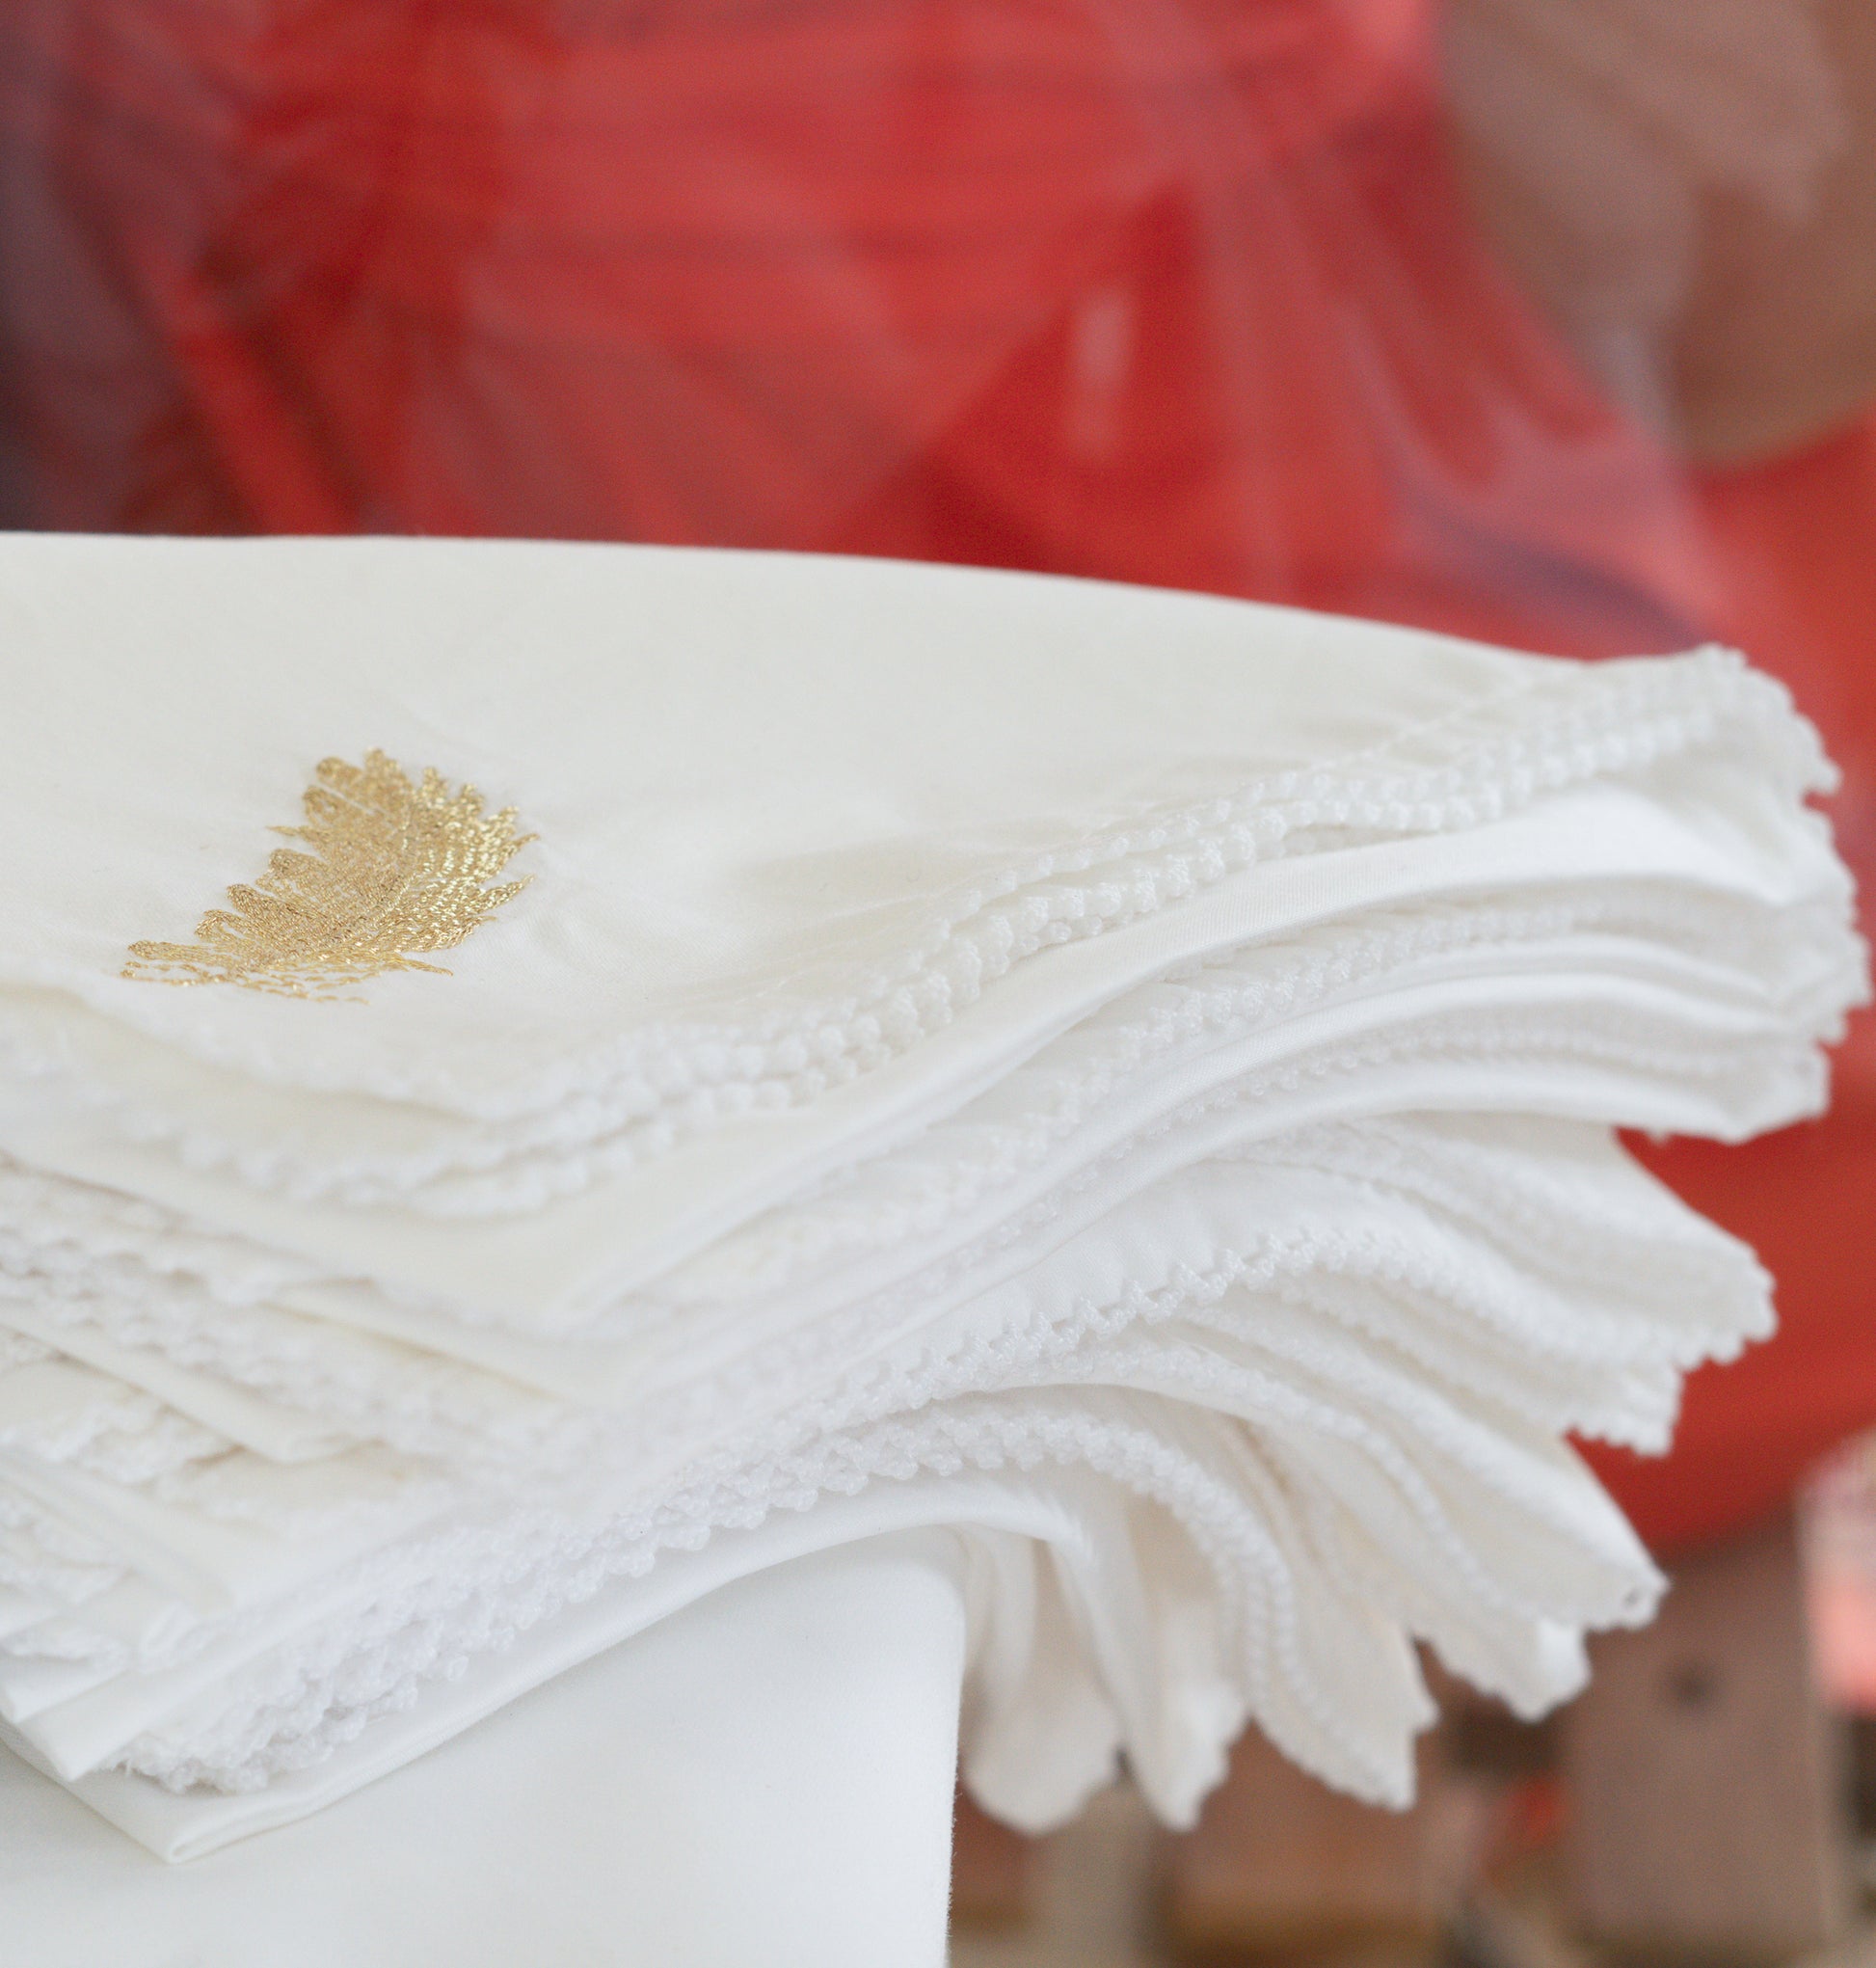 La beauté et l'éthique de l'artisanat marocain se reflètent dans cette nappe blanche aux motifs dorés.